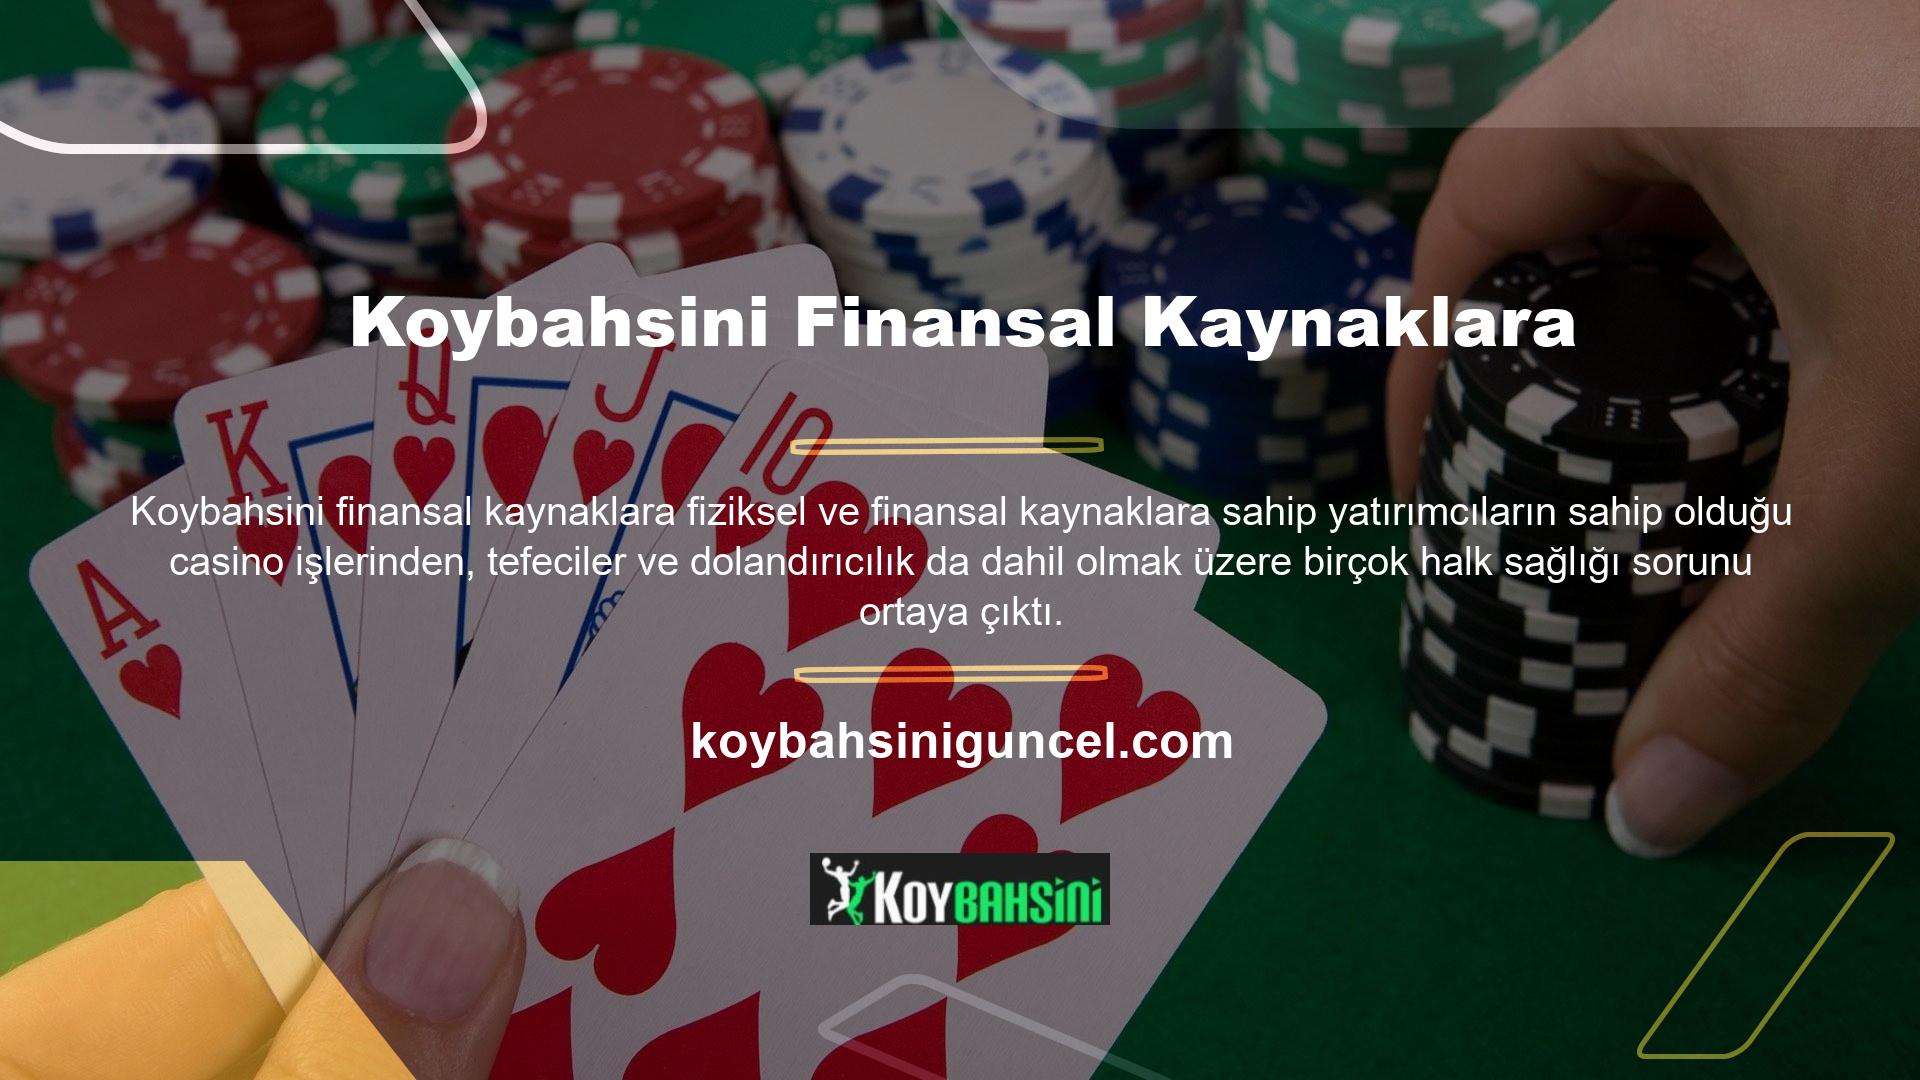 Devletin Koybahsini gibi yabancı sitelere yönelik algısı, halen casino olarak faaliyet gösteren yapıların kapatılmasından etkilendi ve bu da lisanslama zorluklarına yol açtı